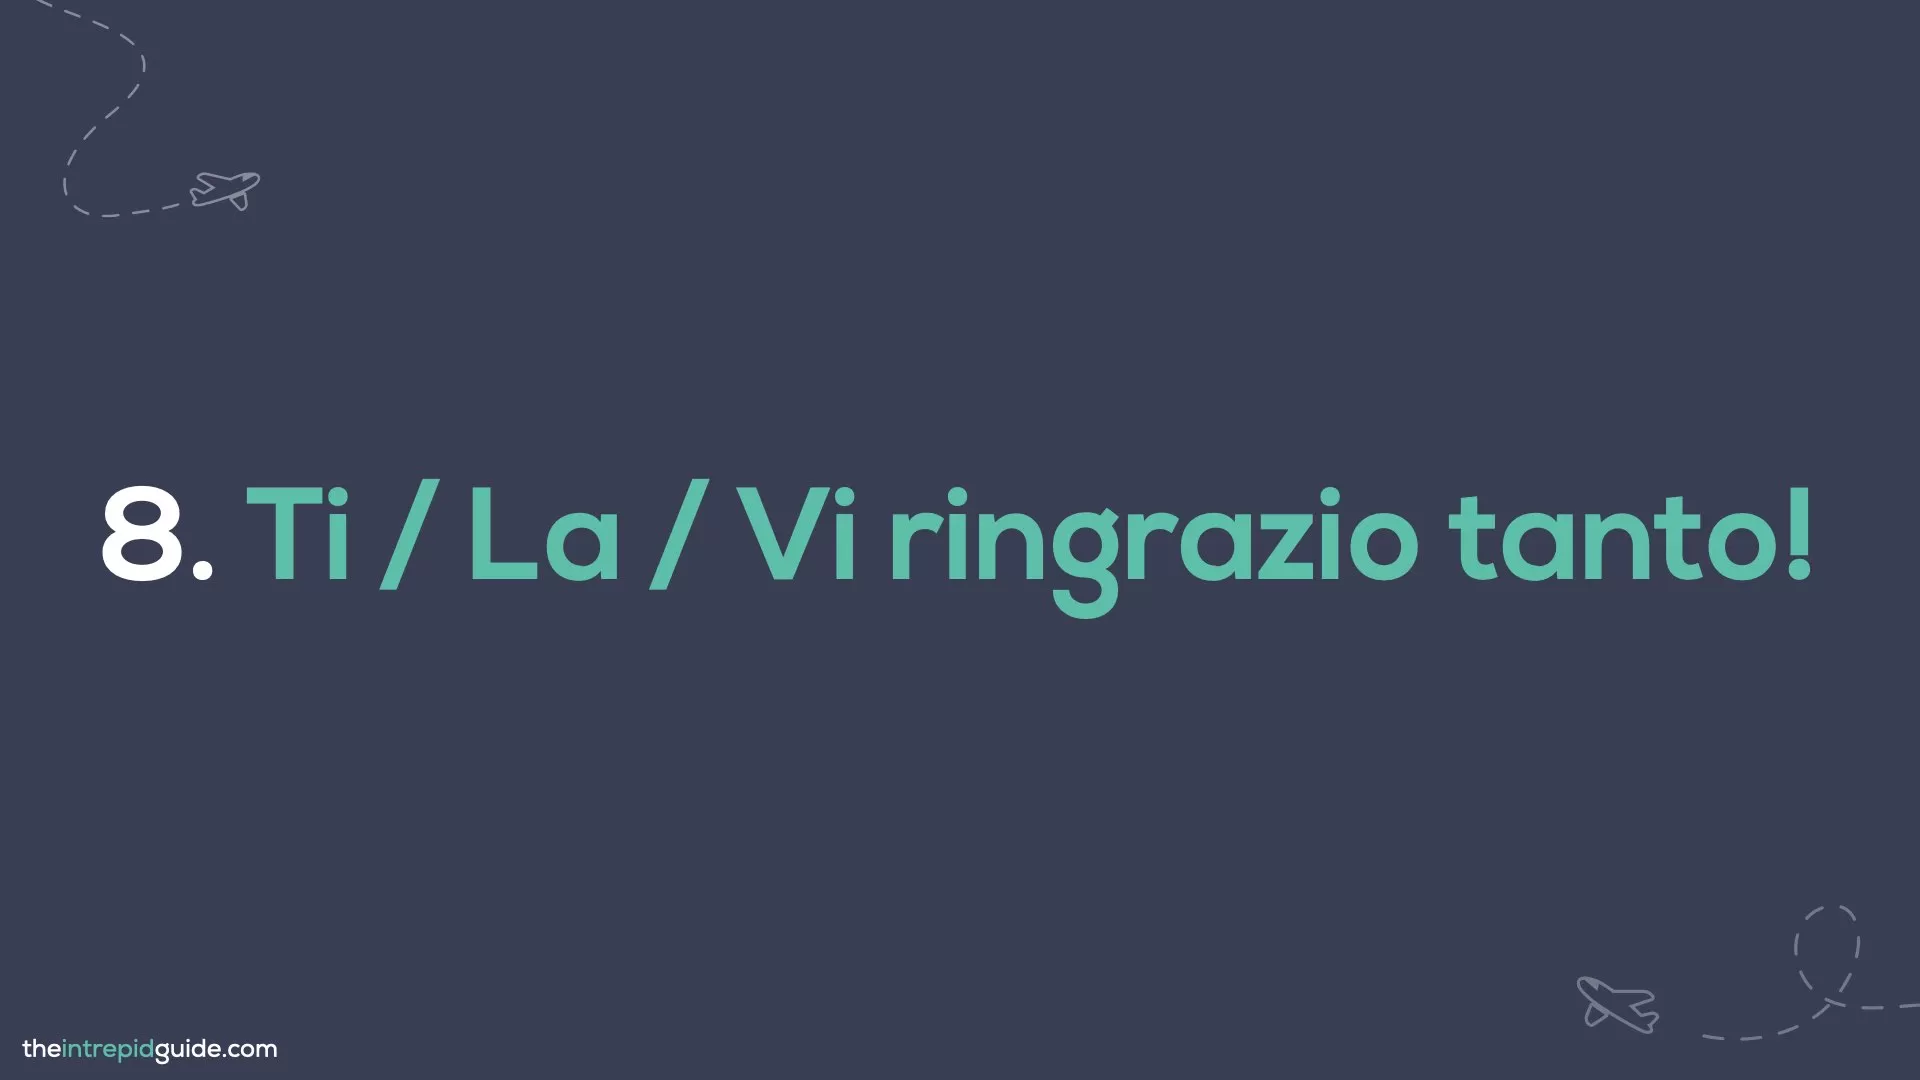 How to say thank you in Italian Slides - Ti / La / Vi ringrazio tanto